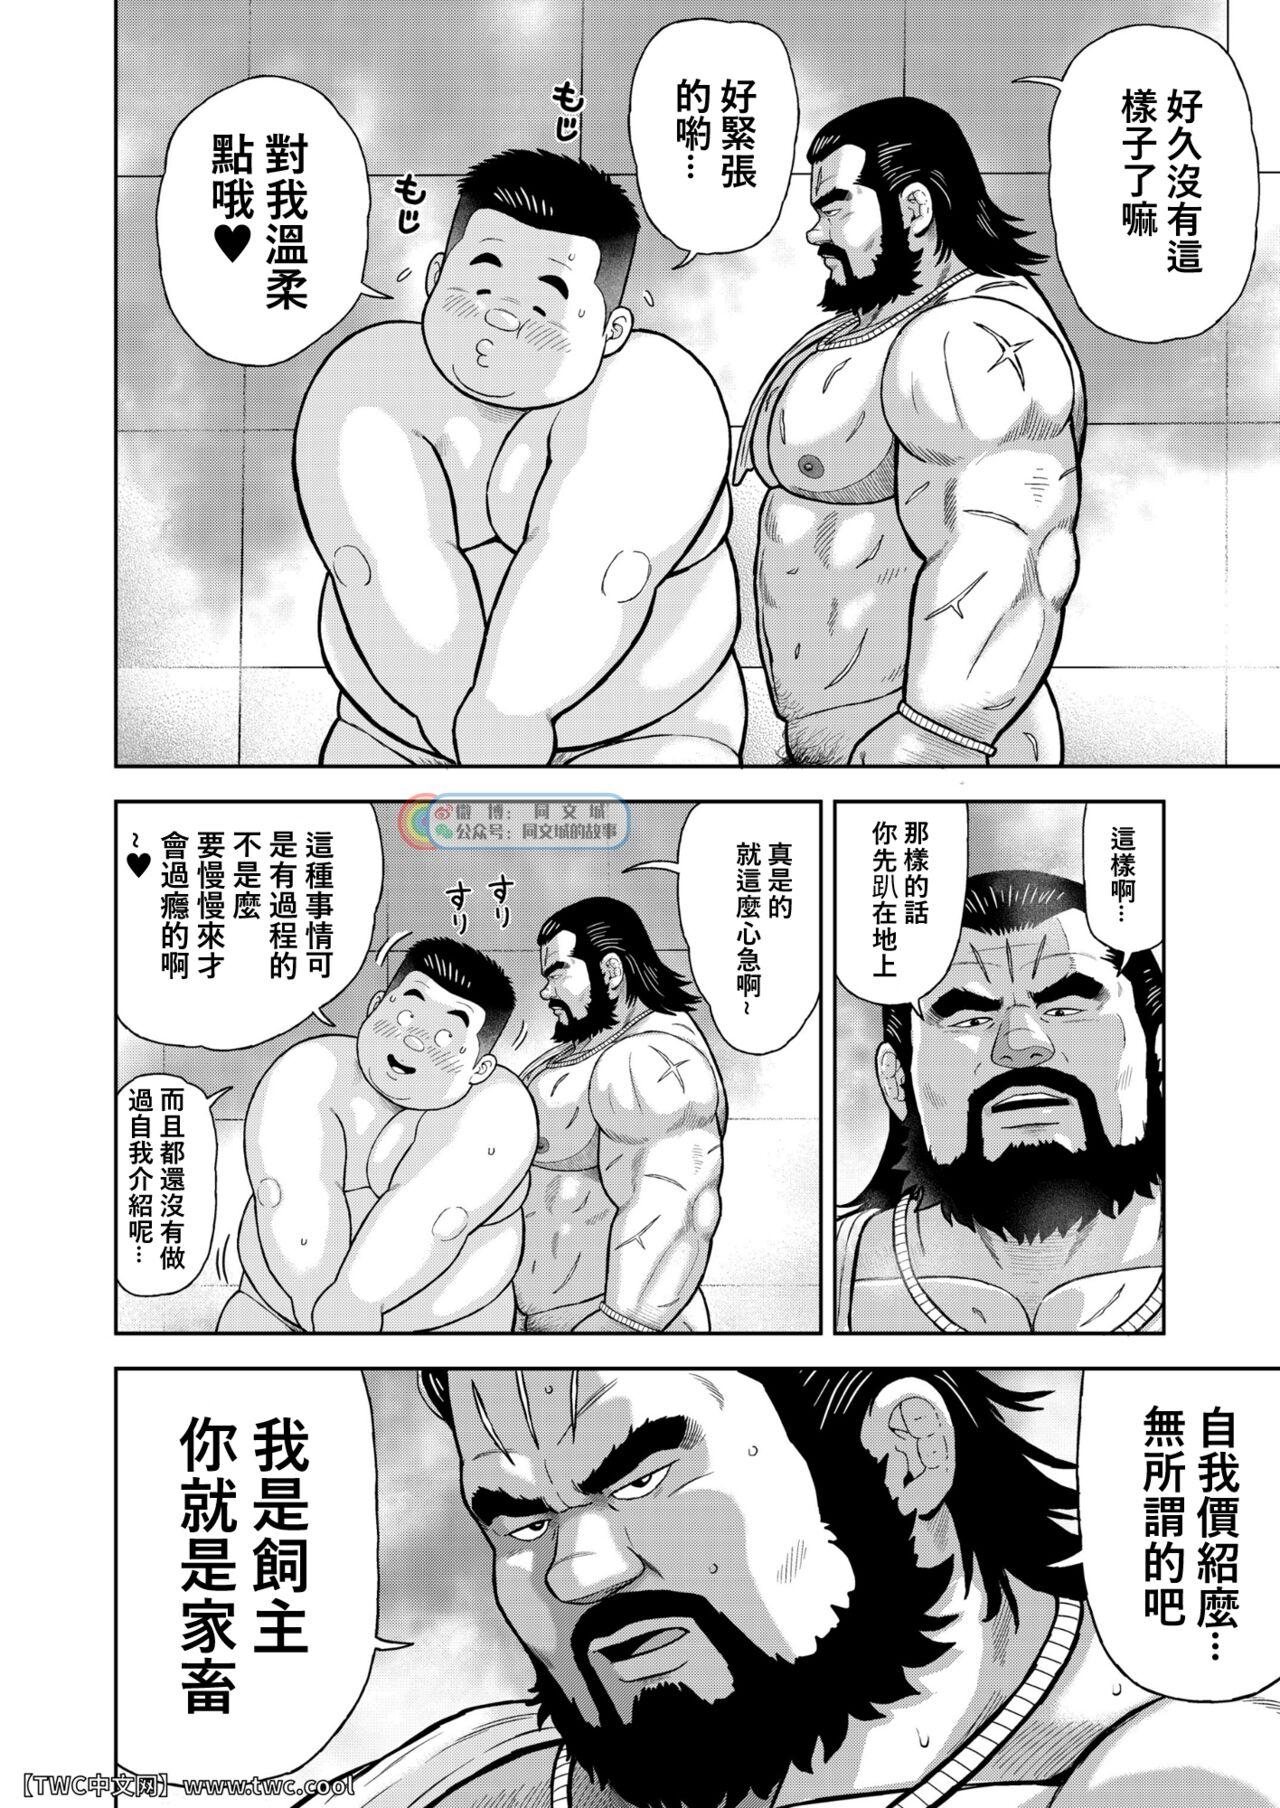 Behind Kunoyu Nijyurokuhatsume Akina's Counterattack Hardon - Page 10